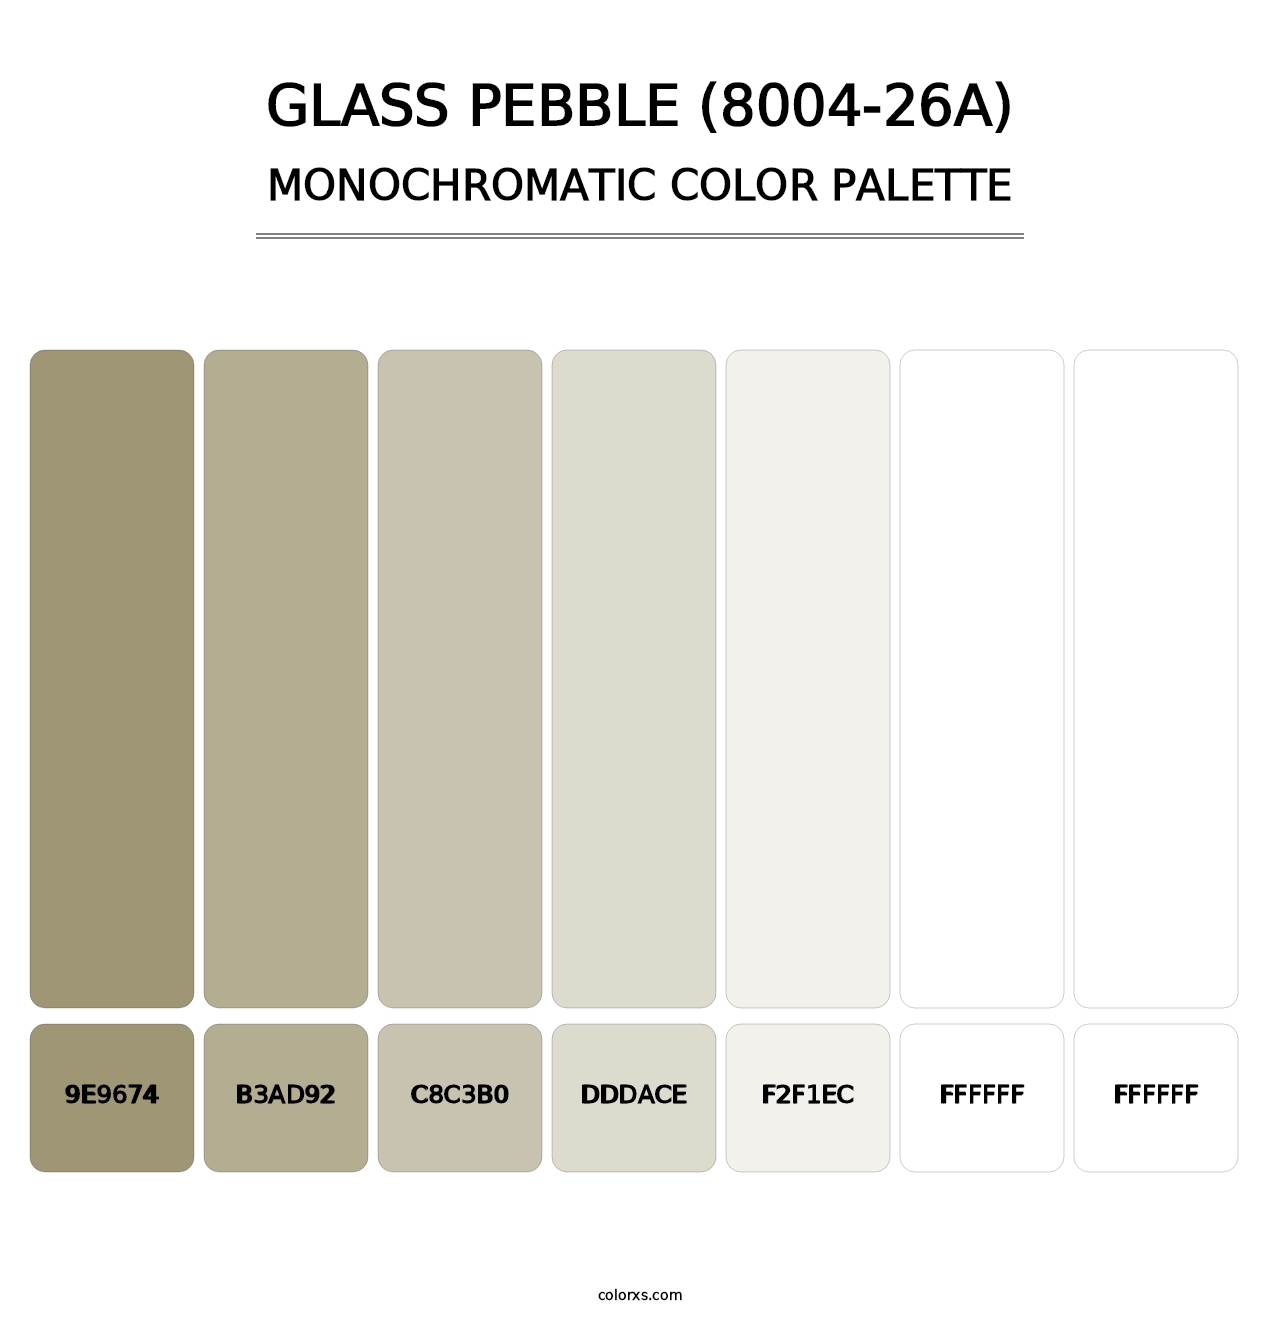 Glass Pebble (8004-26A) - Monochromatic Color Palette